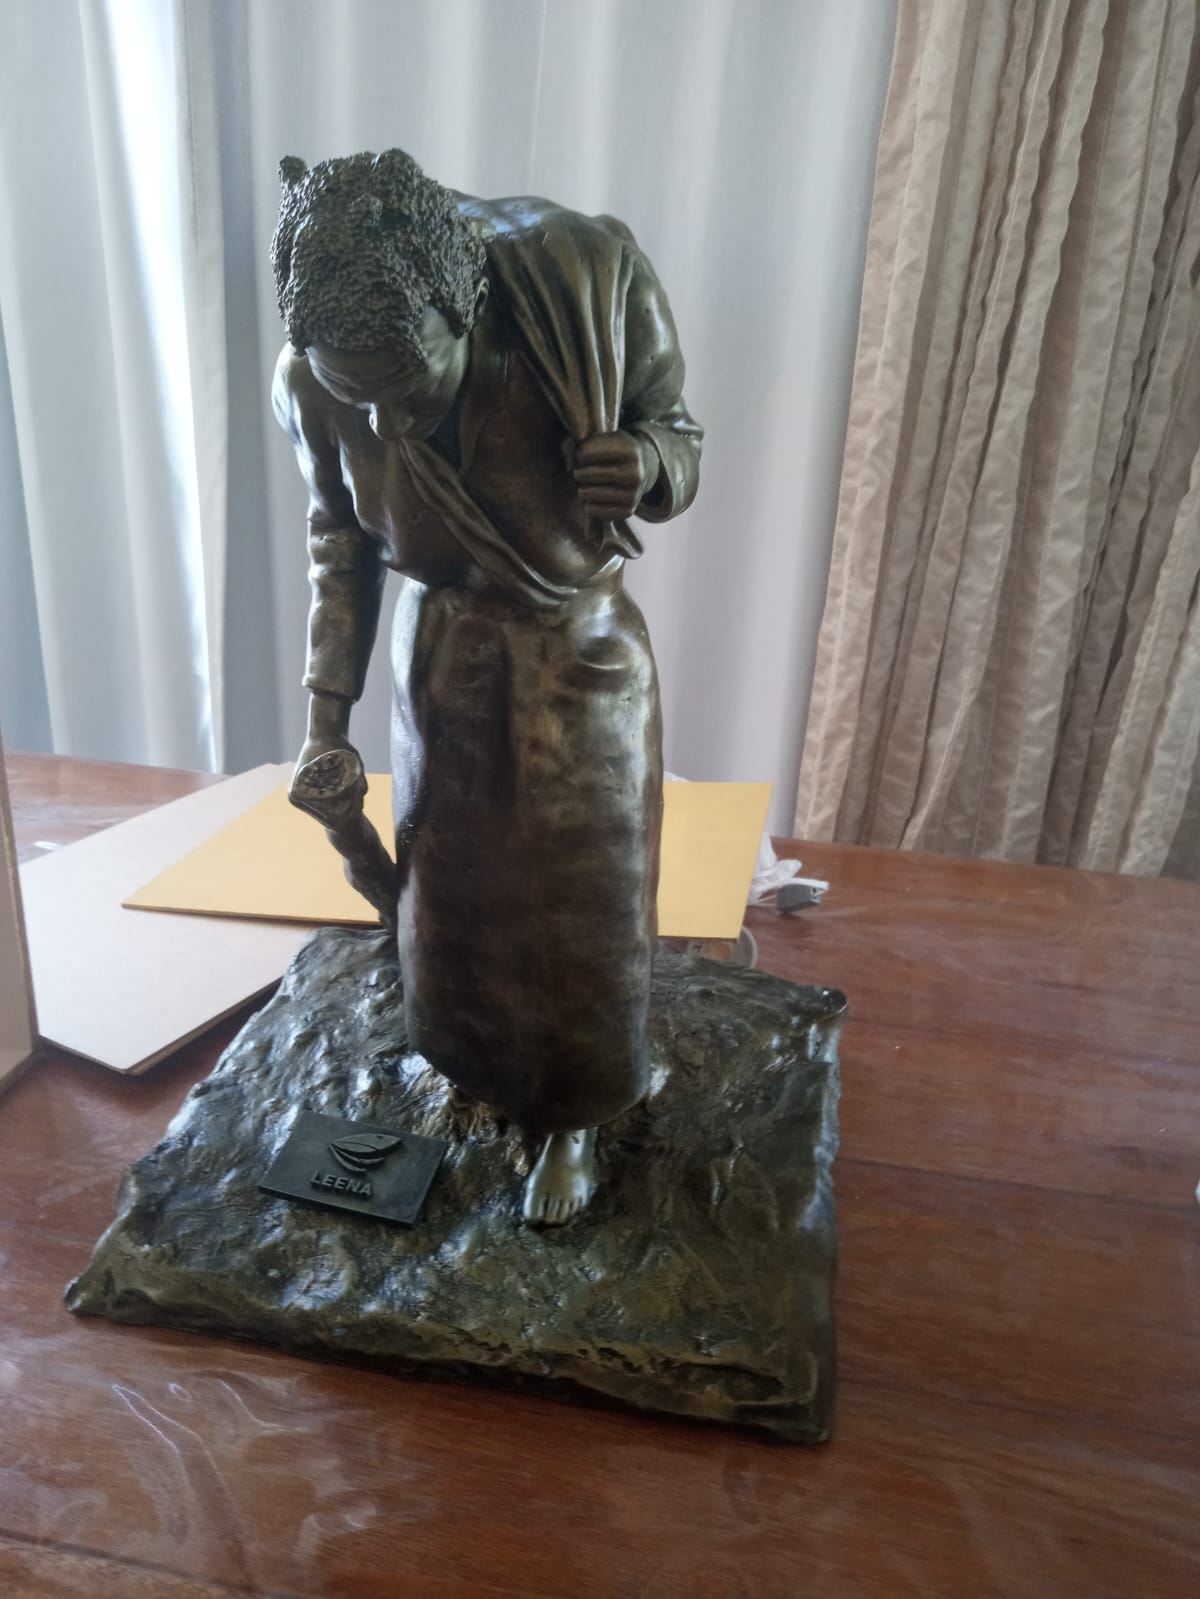 Foto da réplica tridimensional do monumento à Dona Domingas colocado sobre uma mesa